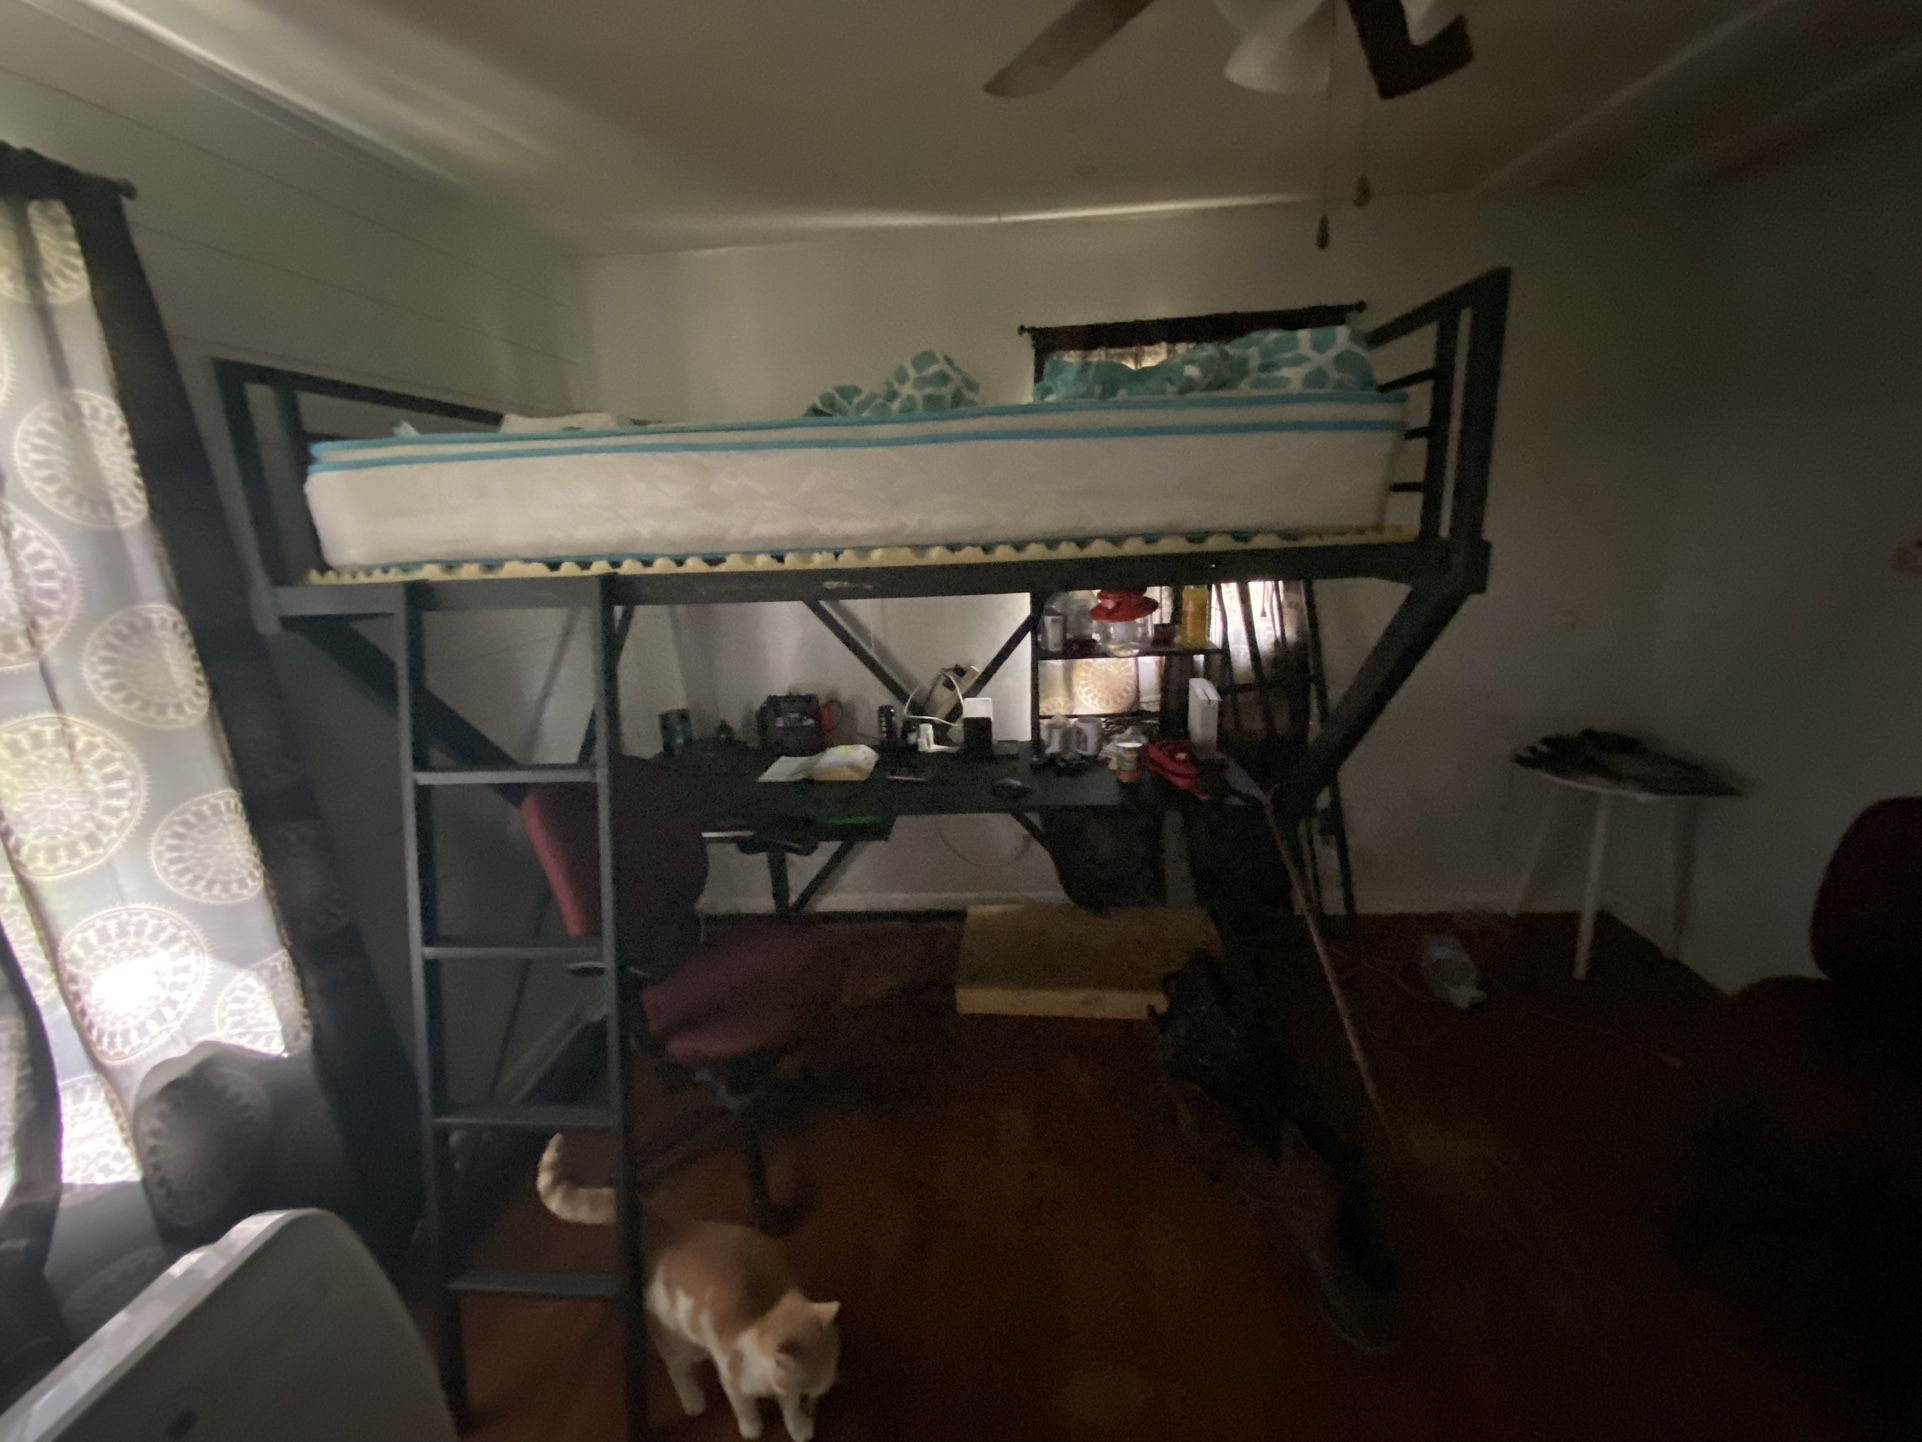 Bed Frame And Desk 